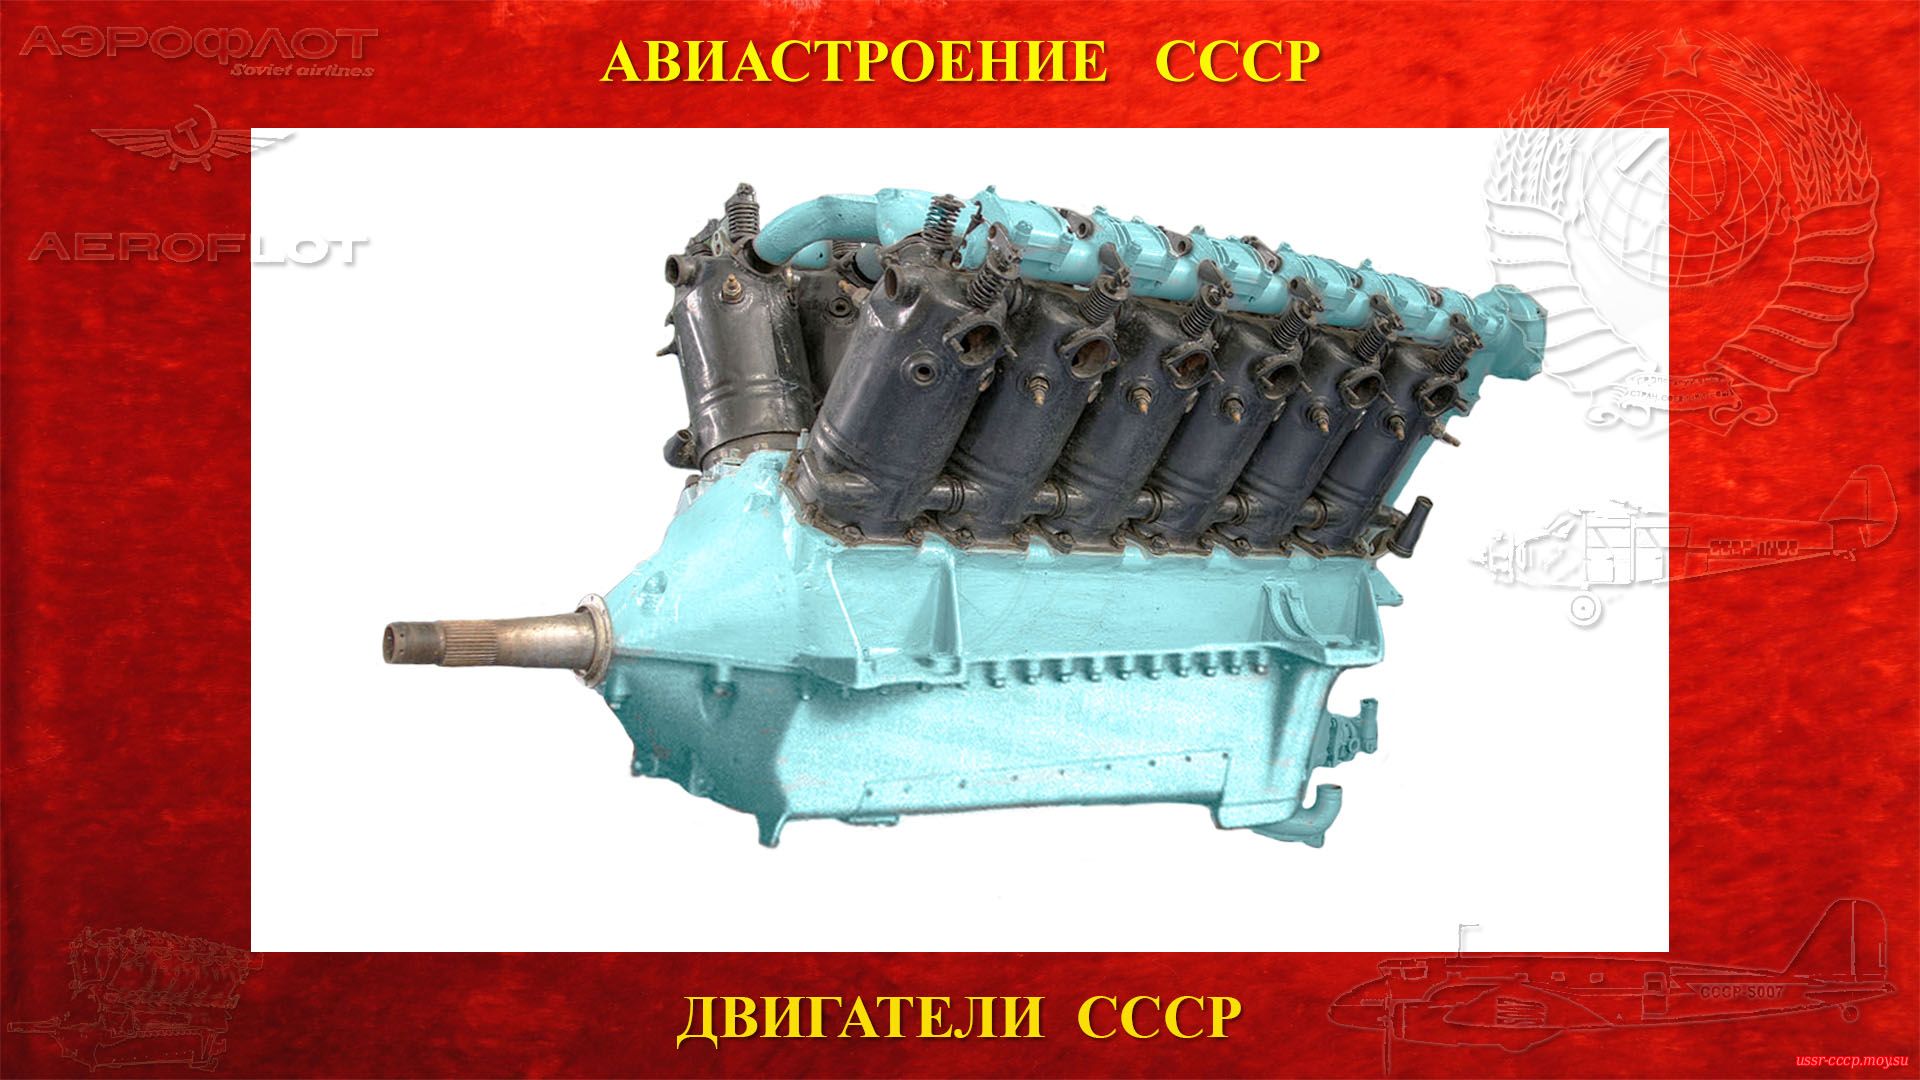 М-17 — Советский авиационный поршневой двигатель СССР (полное повествование)